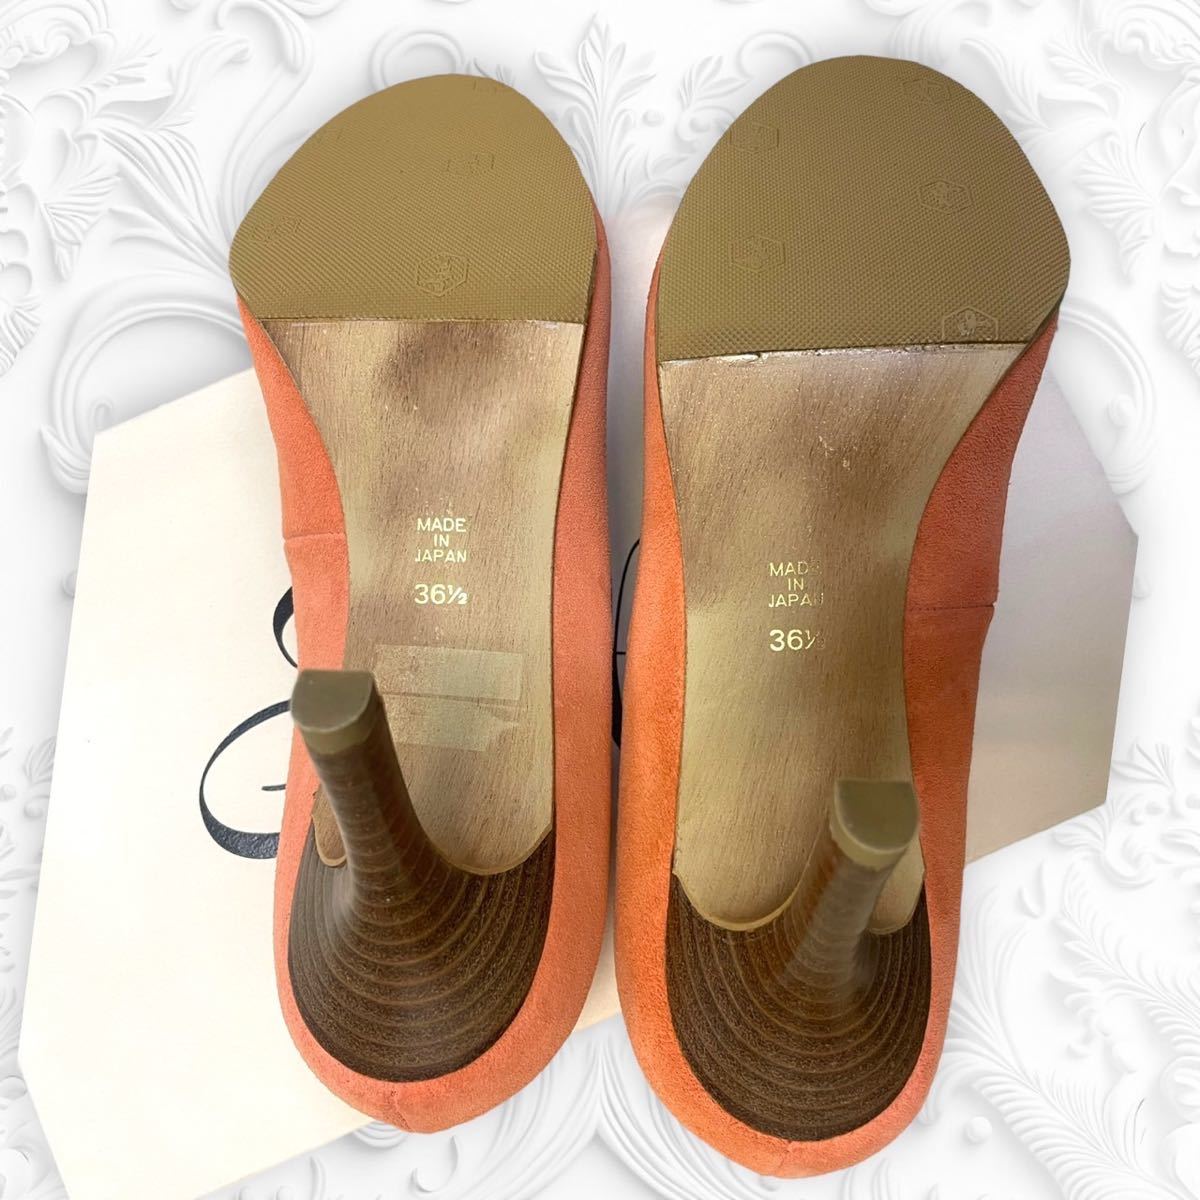 Pippi ...　 каблук 　...　 женский   размер  　36 1/2 размер  　 сделано в Японии 　 оранжевый ...　... каблук 